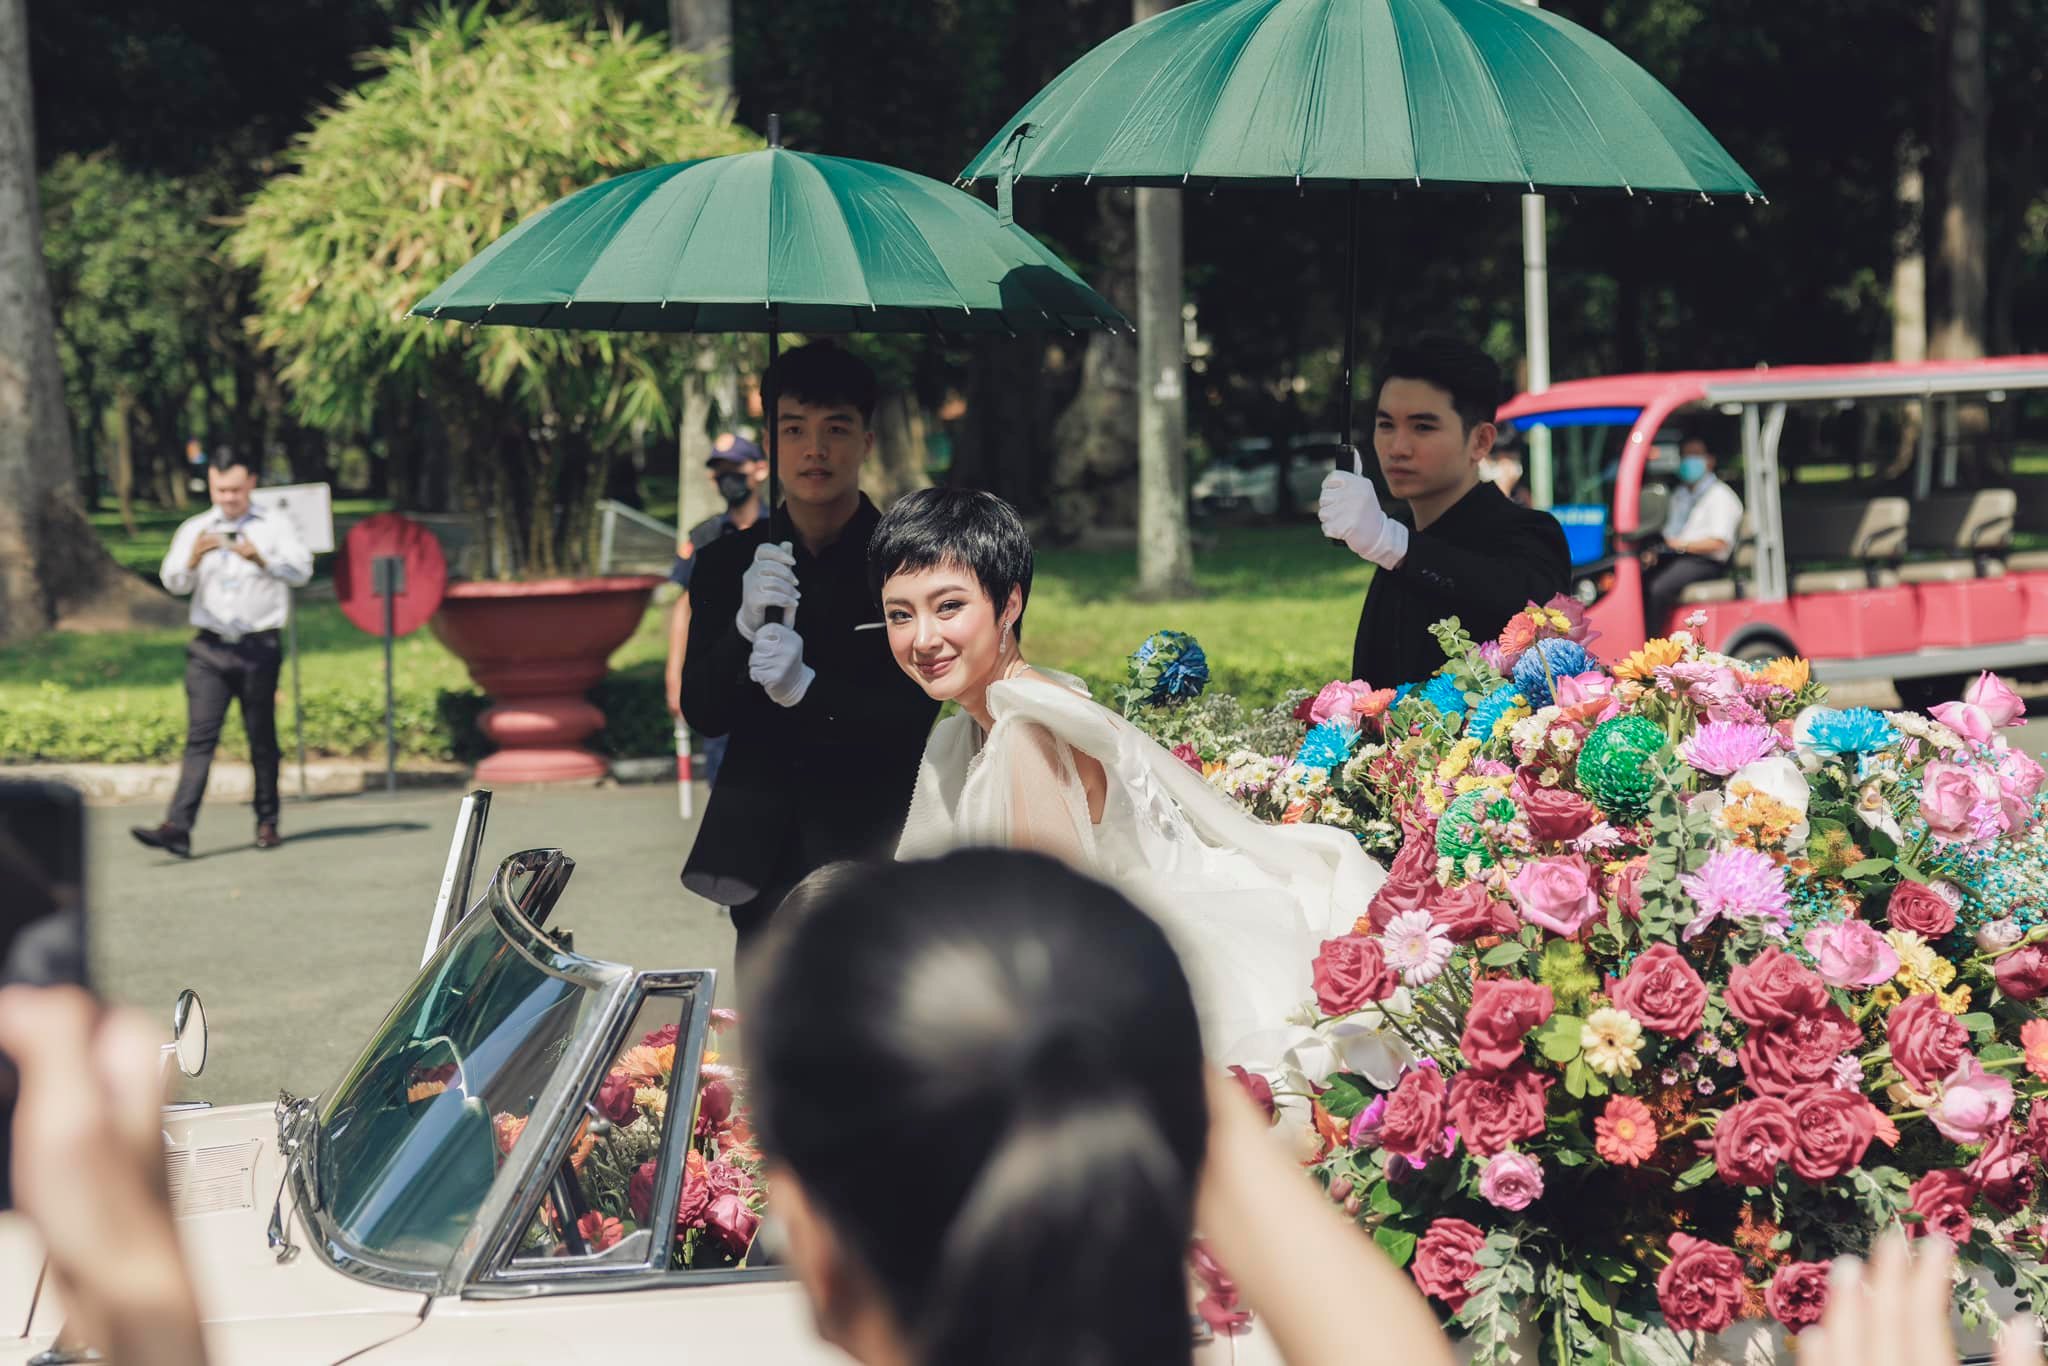 angela phuong trinh 2 Angela Phương Trinh ngồi xe hoa đổ bộ thảm đỏ triển lãm thời trang của NTK Phương My